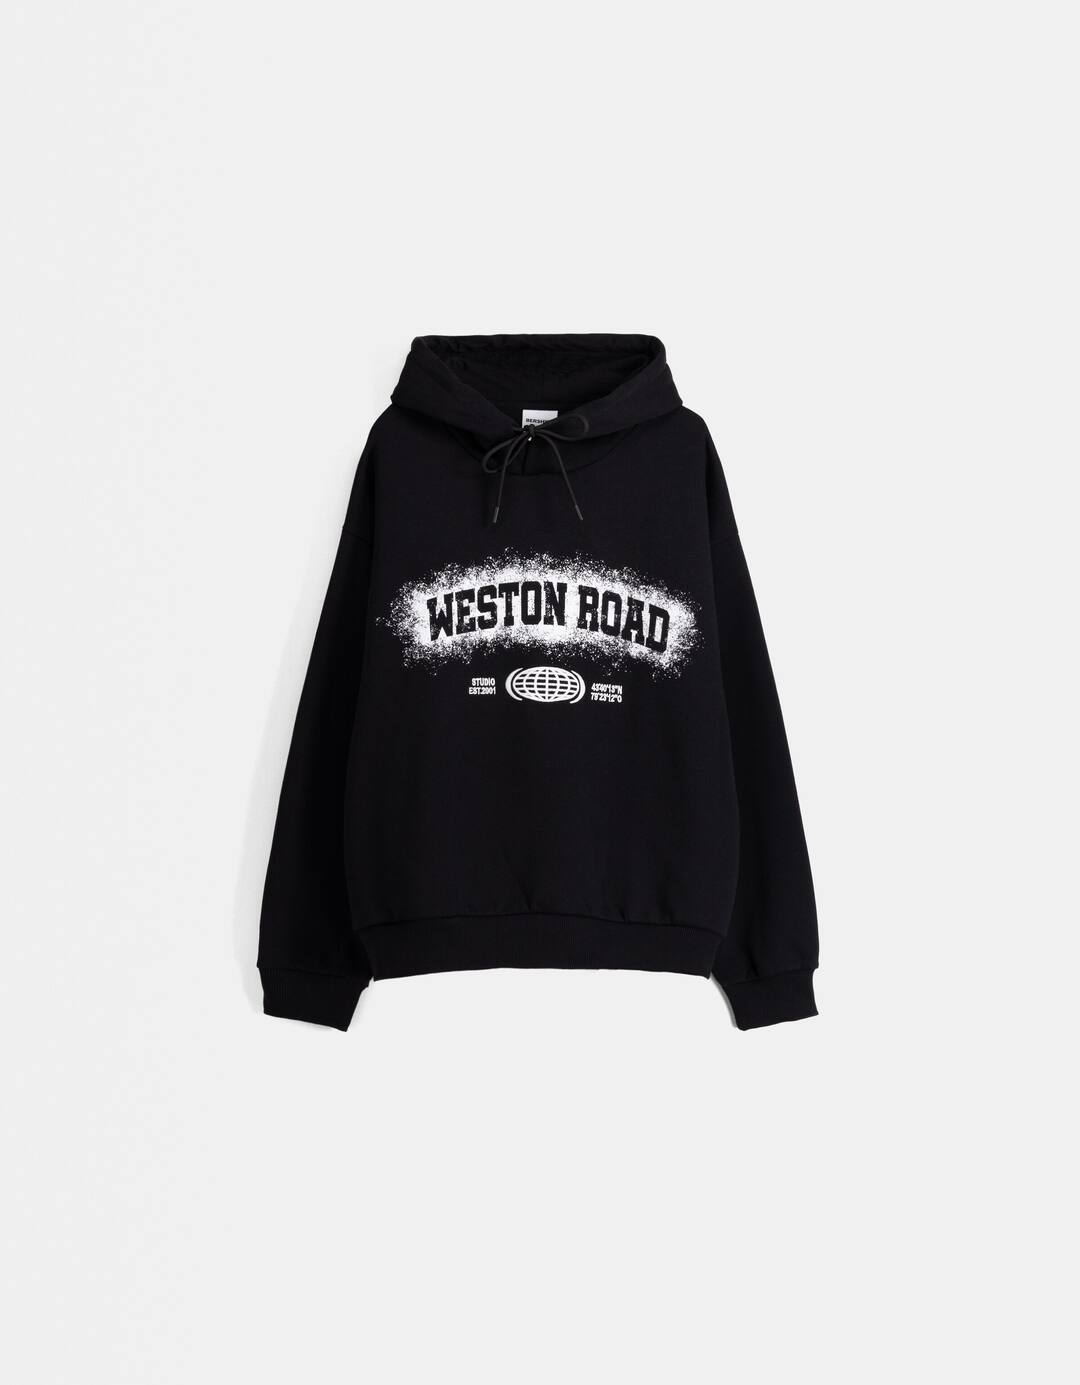 Boxy fit print hoodie